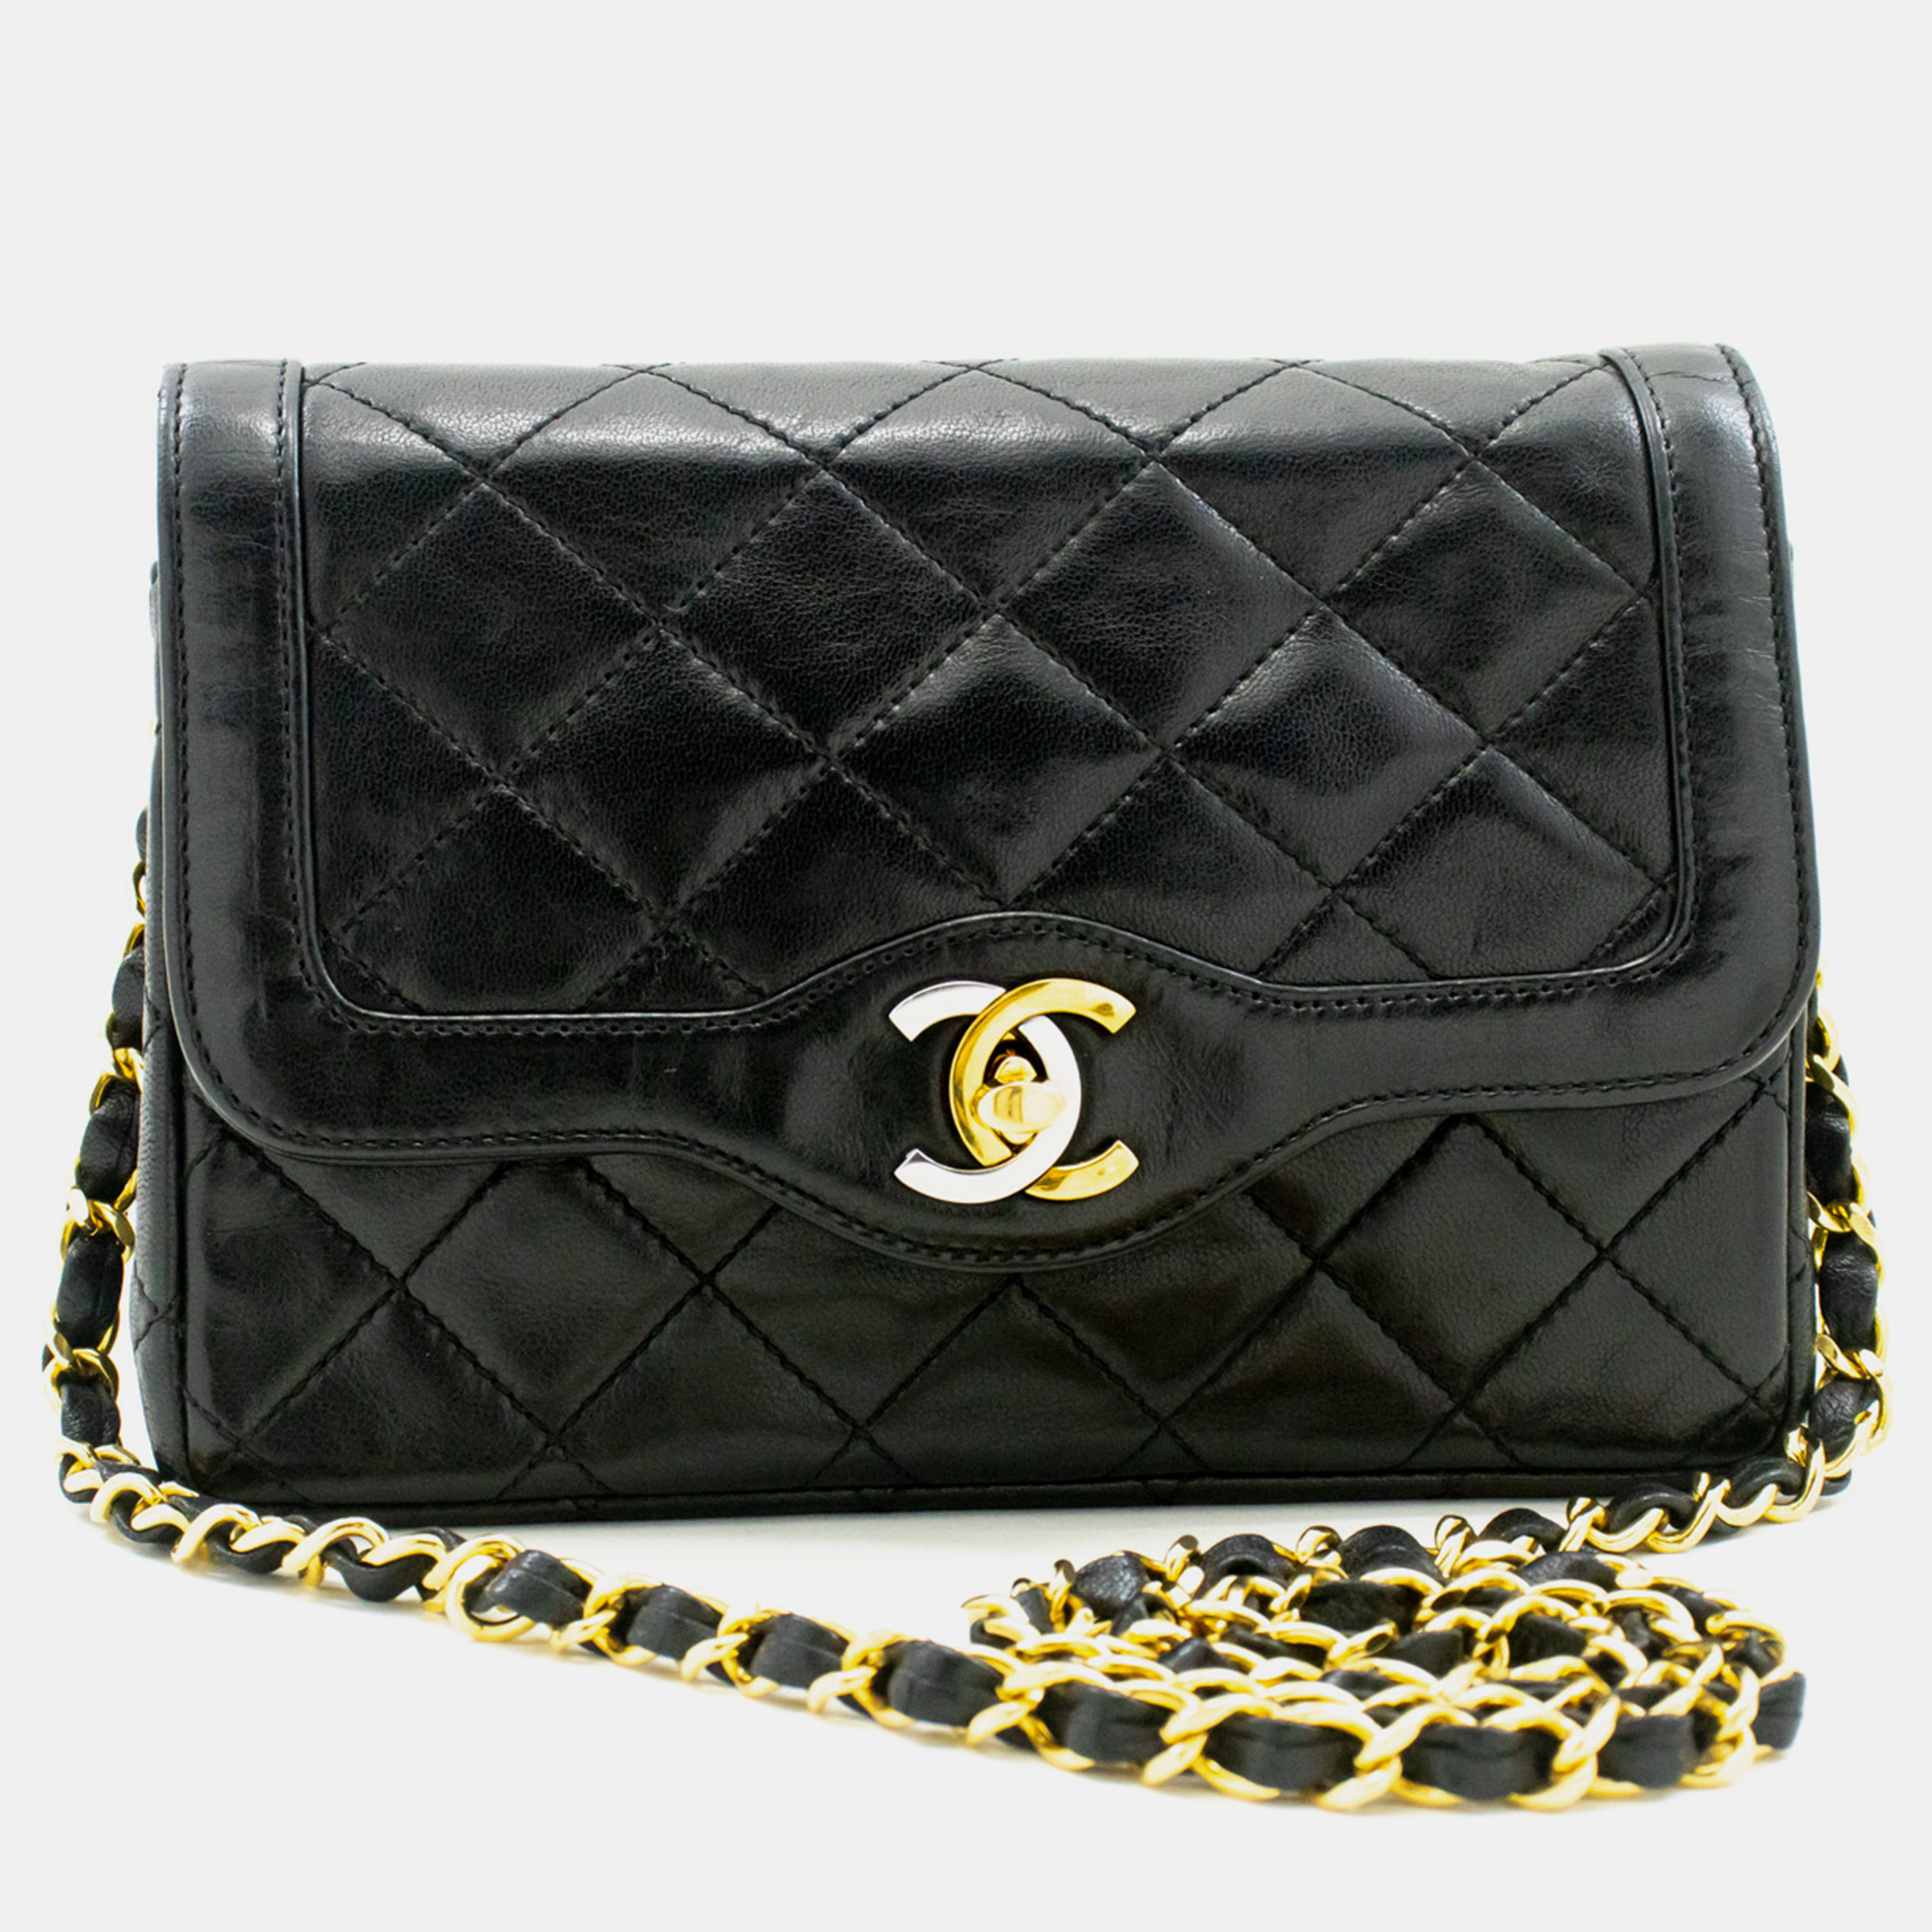 Chanel black leather  vintage flap bag